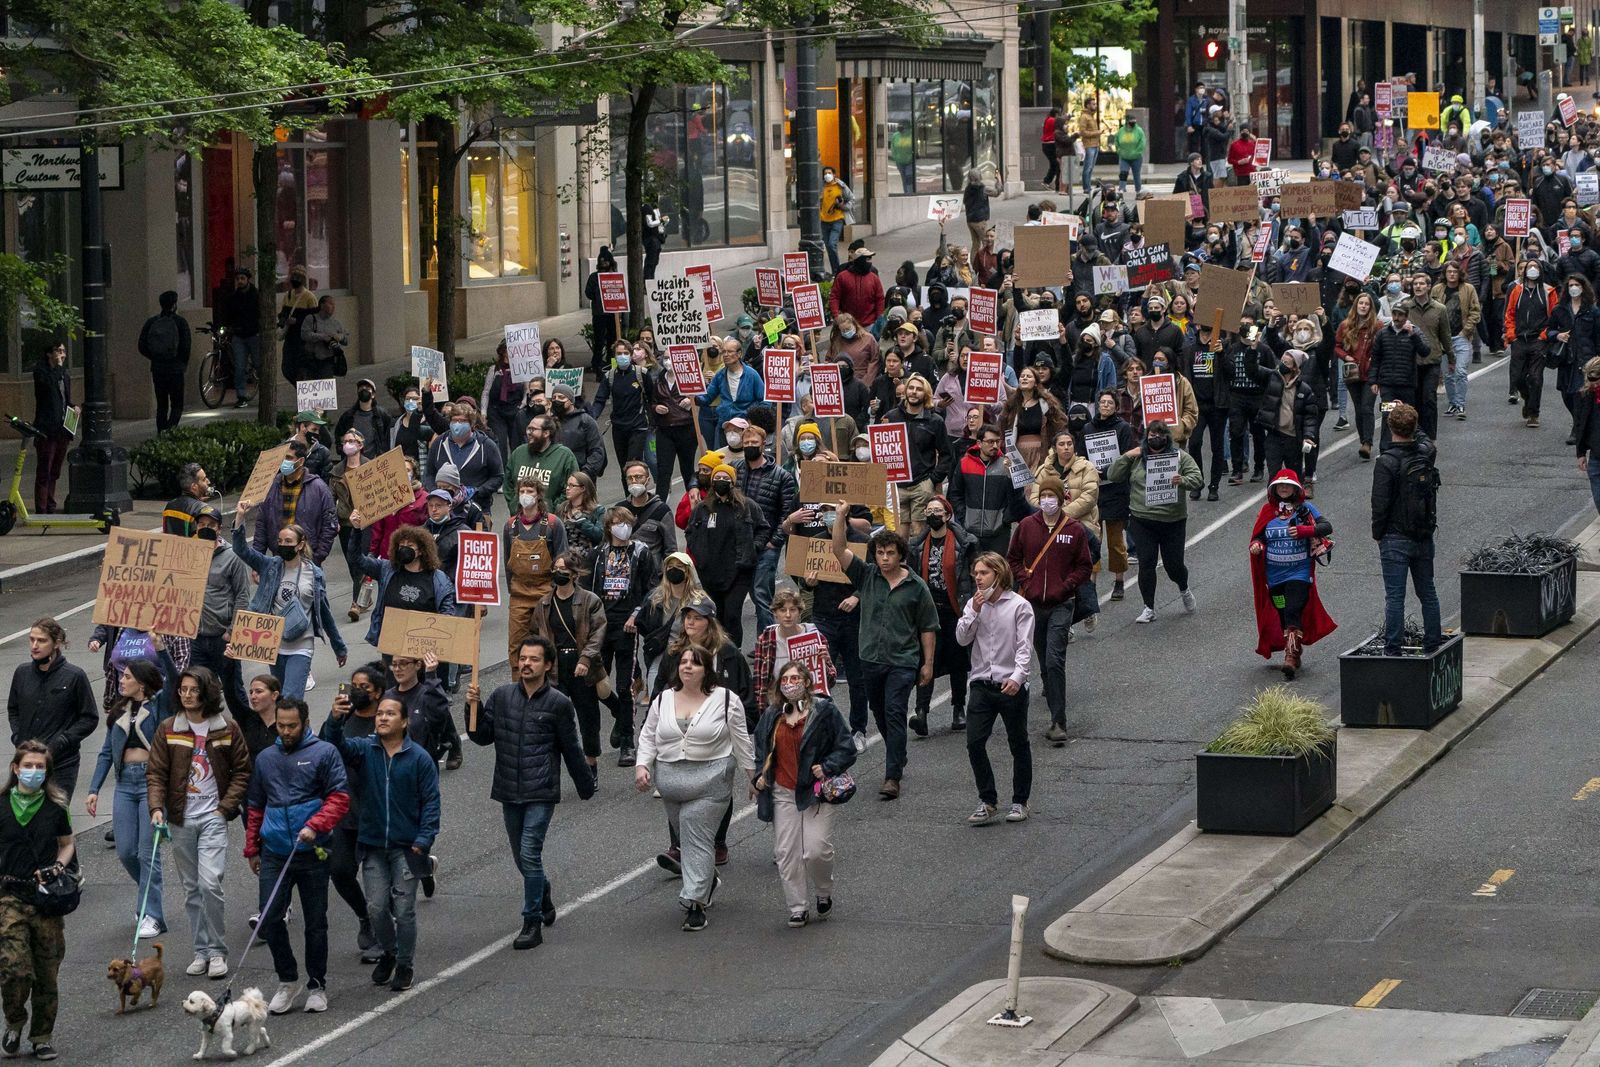 متظاهرون يحتجون ضد مشروع قرار للمحكمة العليا الأميركية يُقيِّد الإجهاض في الولايات المتحدة، كاليفورنيا– 3 مايو 2022 - AFP